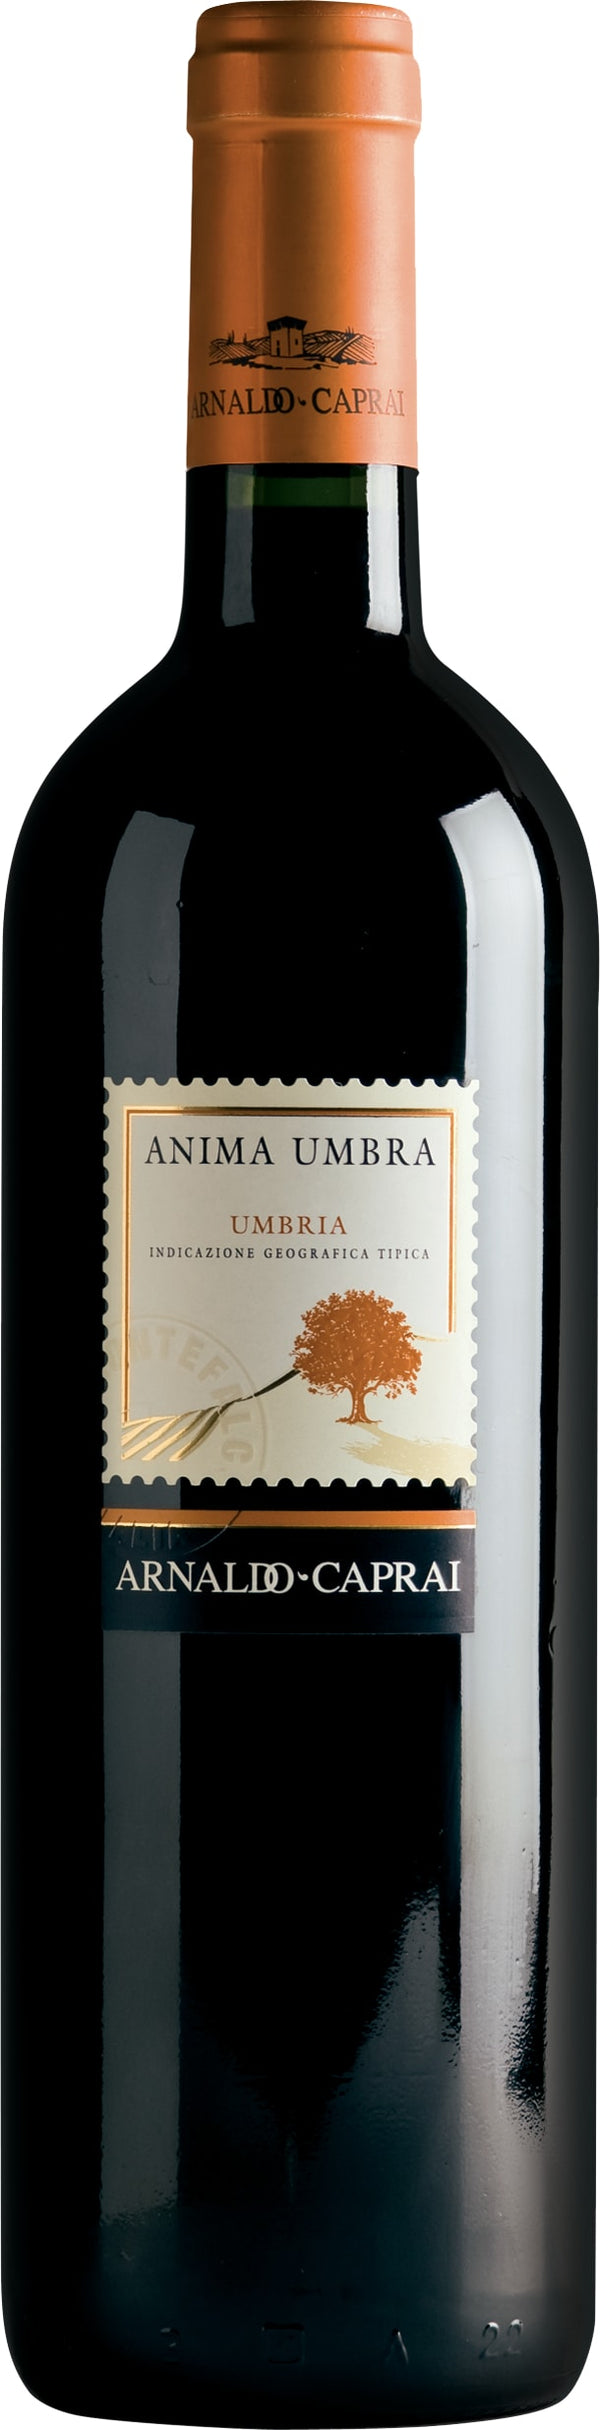 Arnaldo Caprai Anima Umbra Rosso 2019 6x75cl - Just Wines 